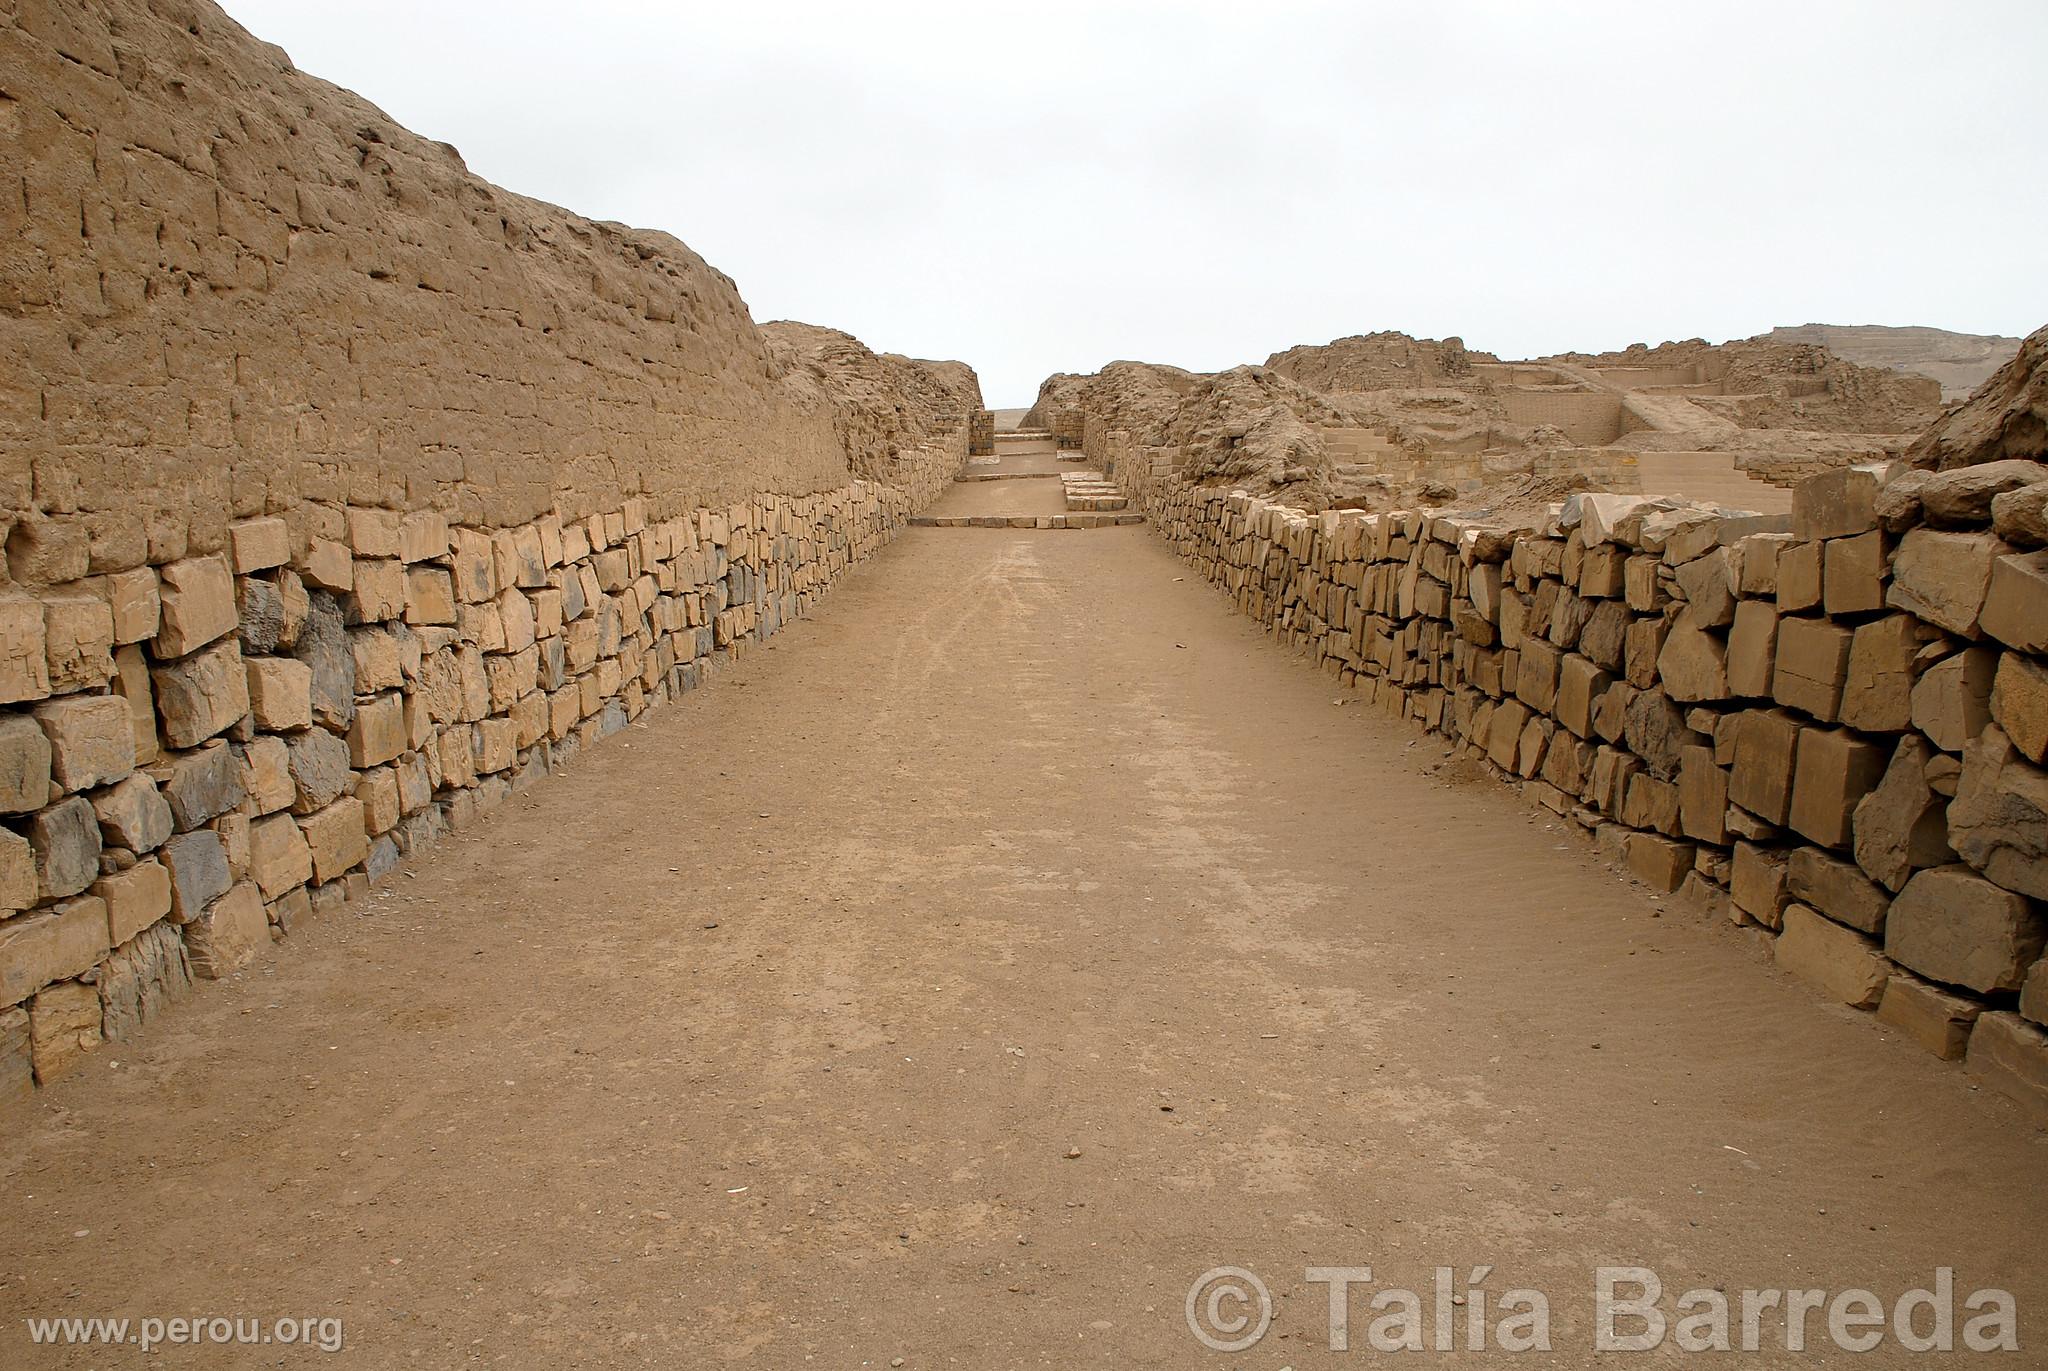 Complexe archéologique de Pachacamac